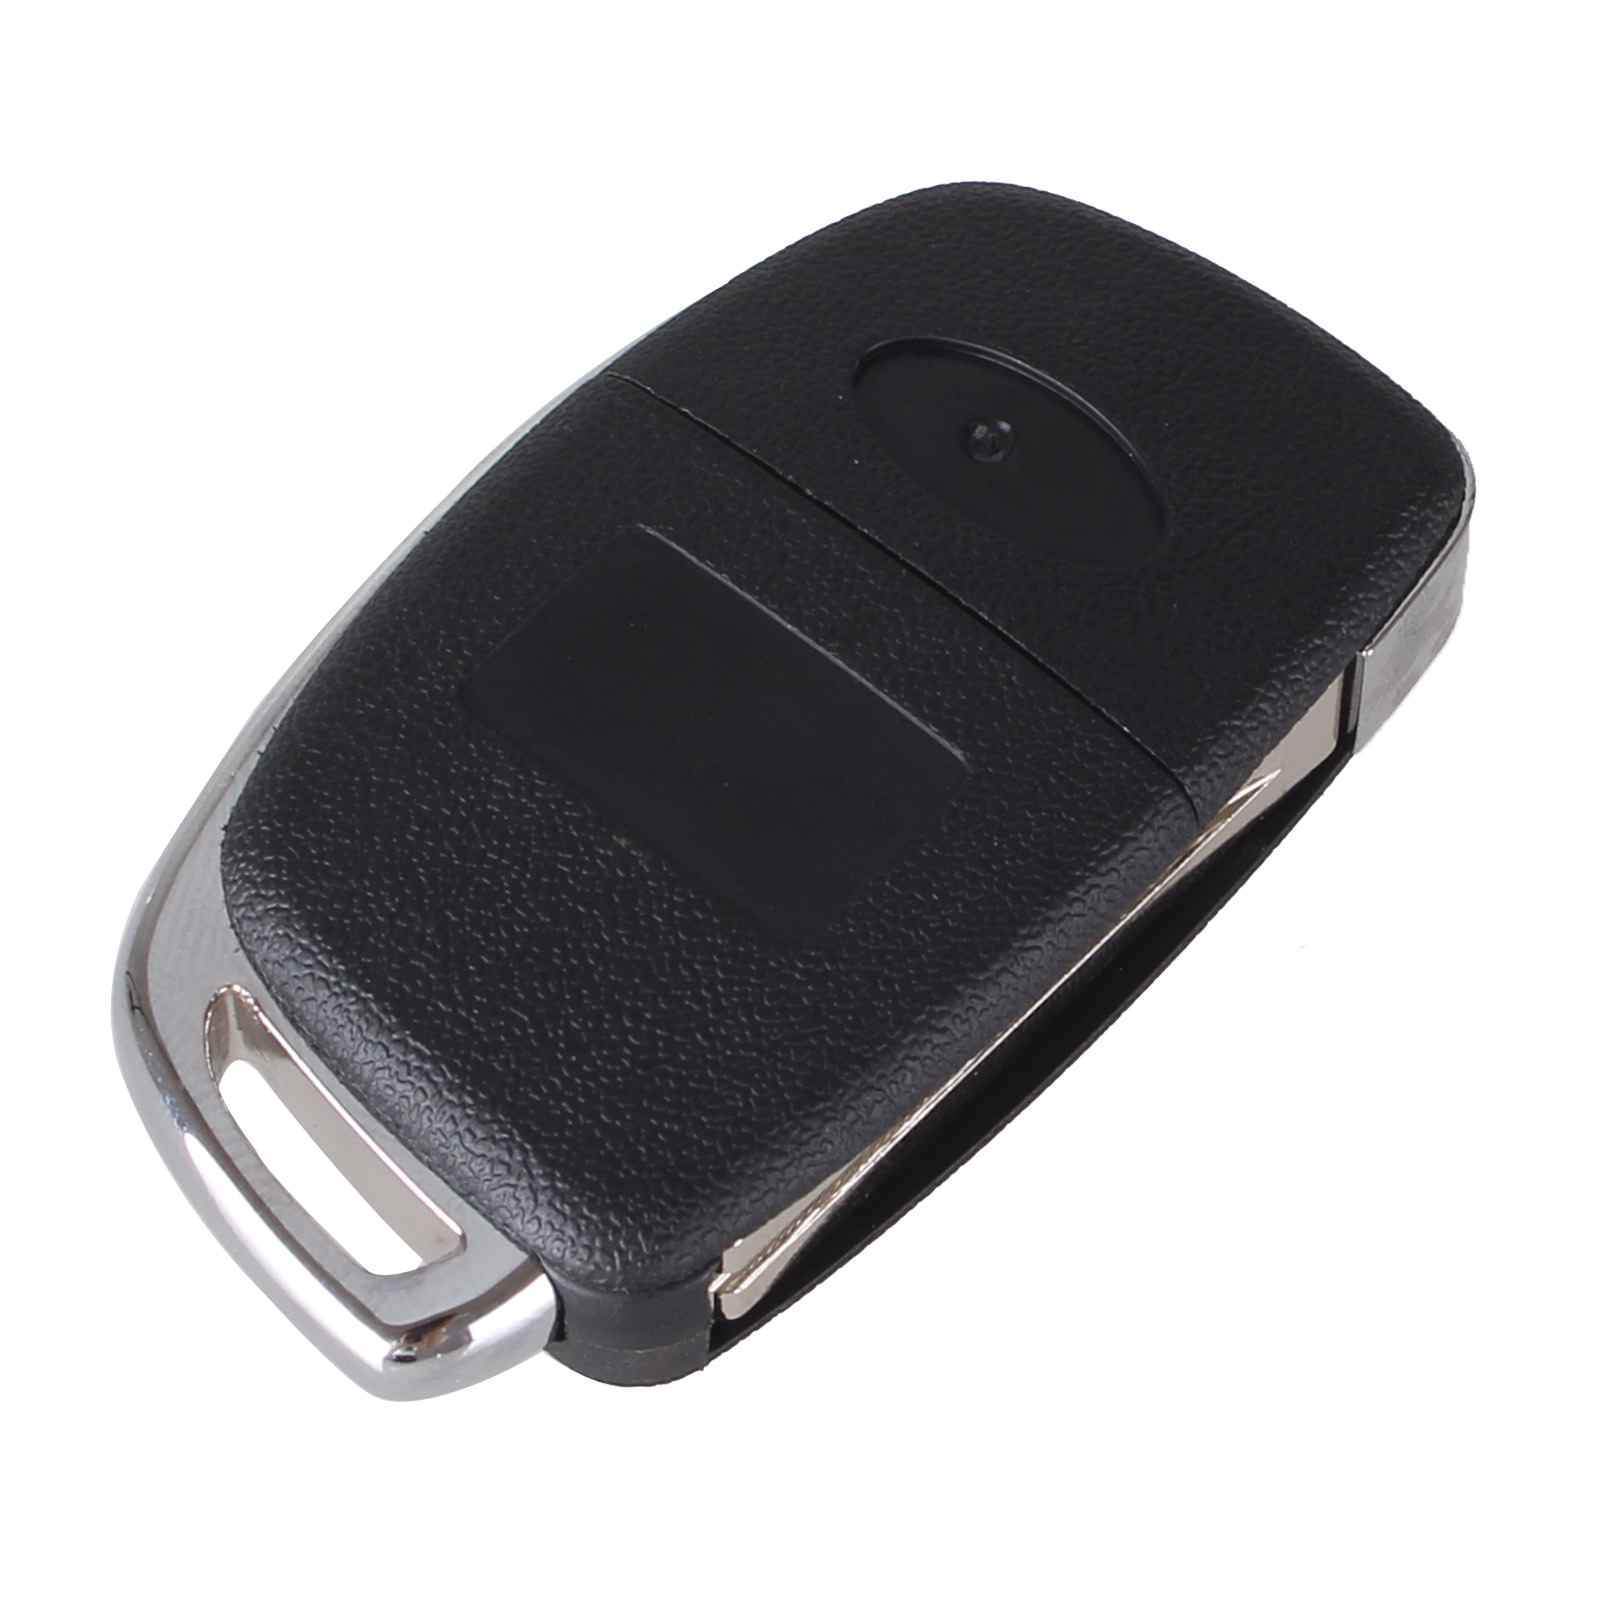 Fekete színű, Hyundai 3 gombos kulcs, bicskakulcs hátulja.